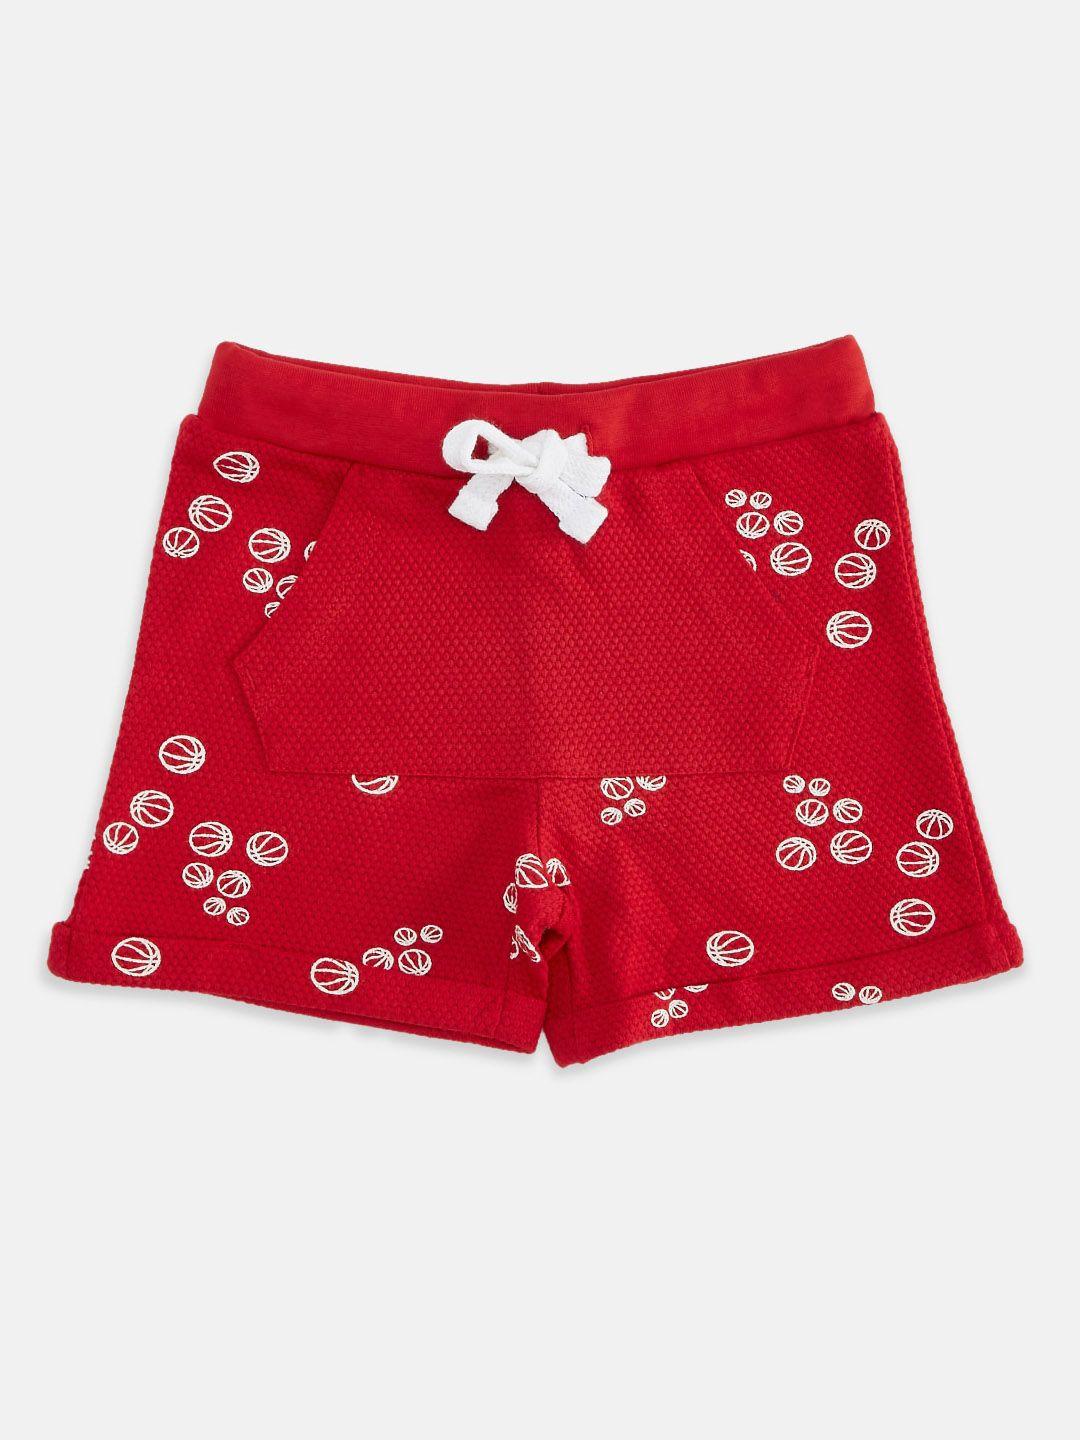 pantaloons baby boys red printed shorts